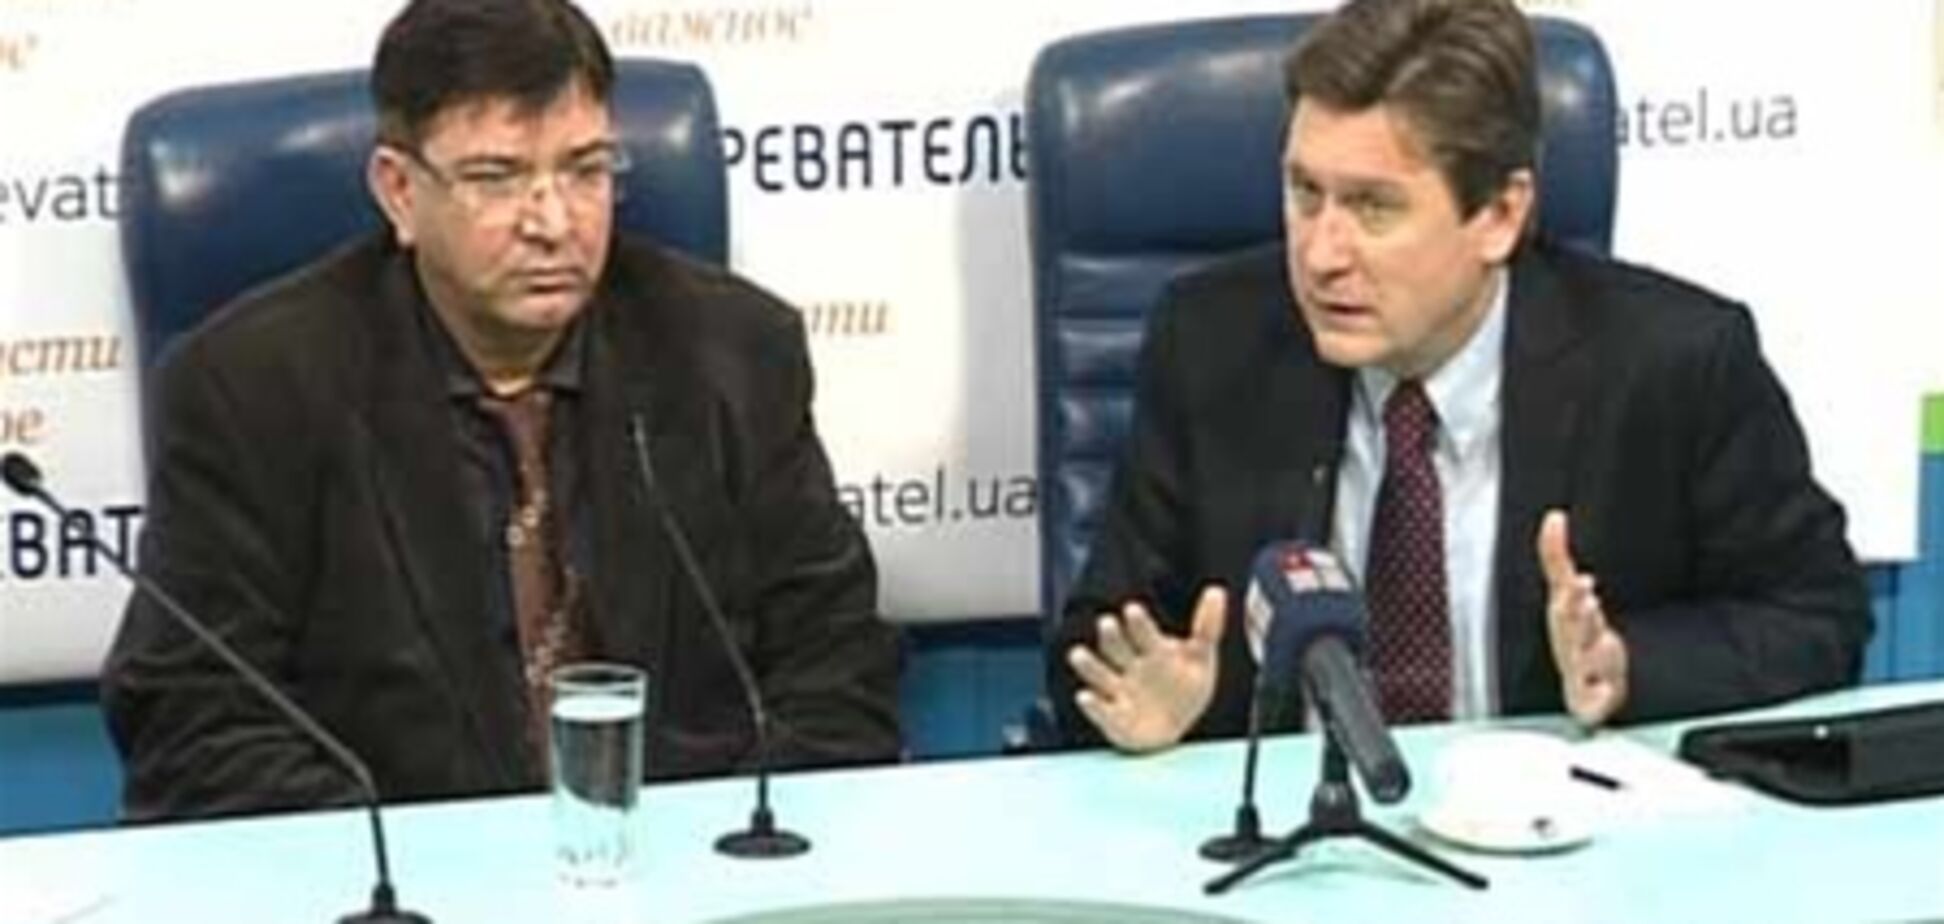 Політолог пояснив, чому за Тимошенко стежать відеокамери